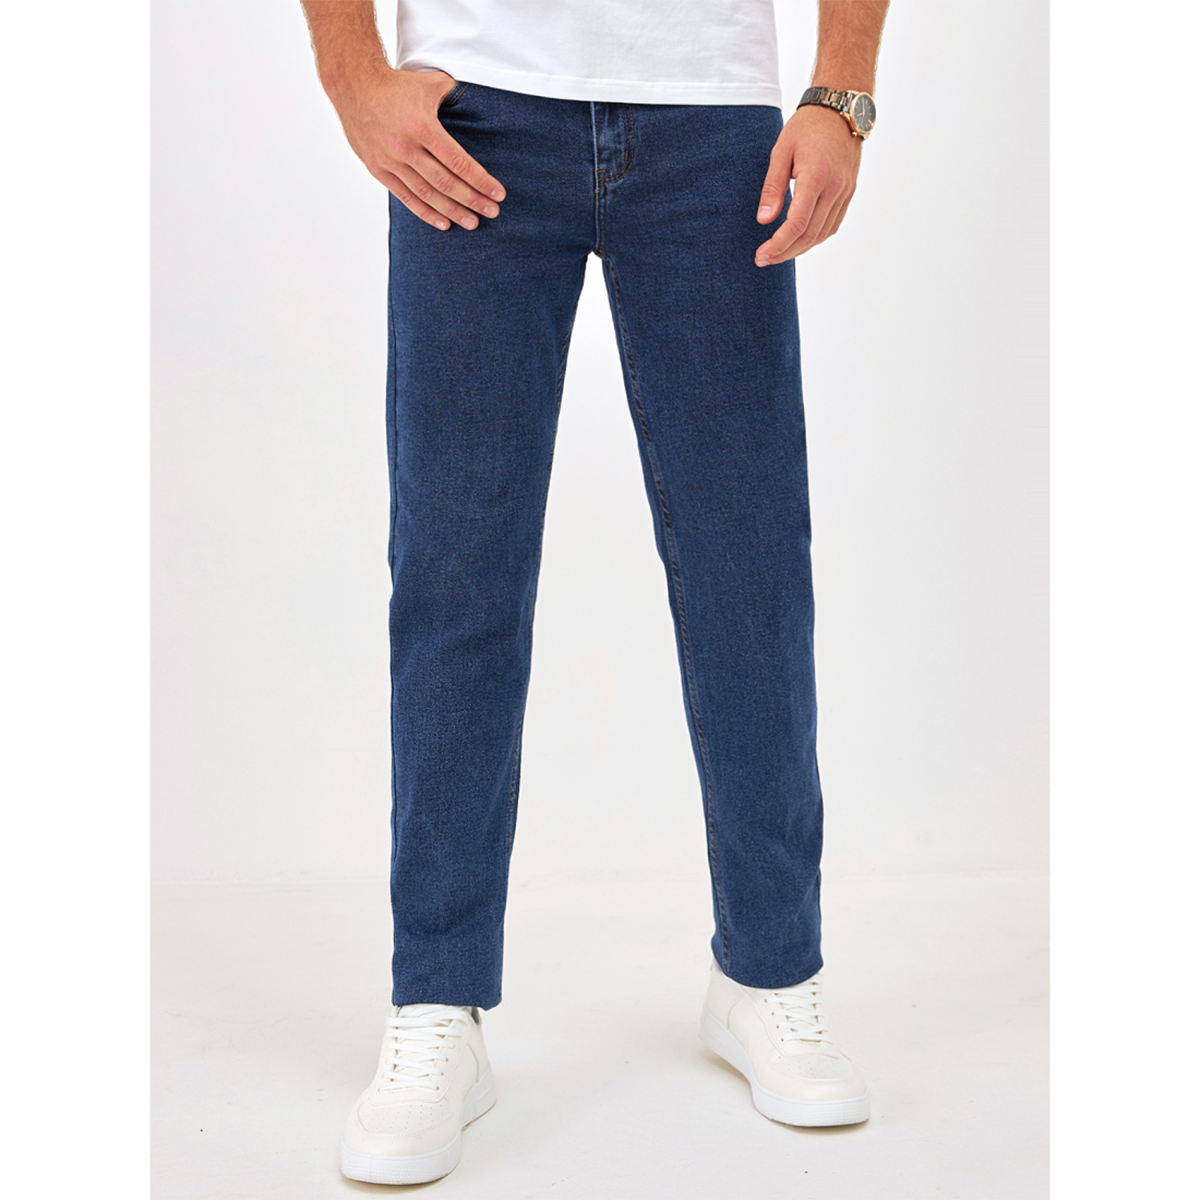 Джинсы мужские Barouz Jeans classic синие 29